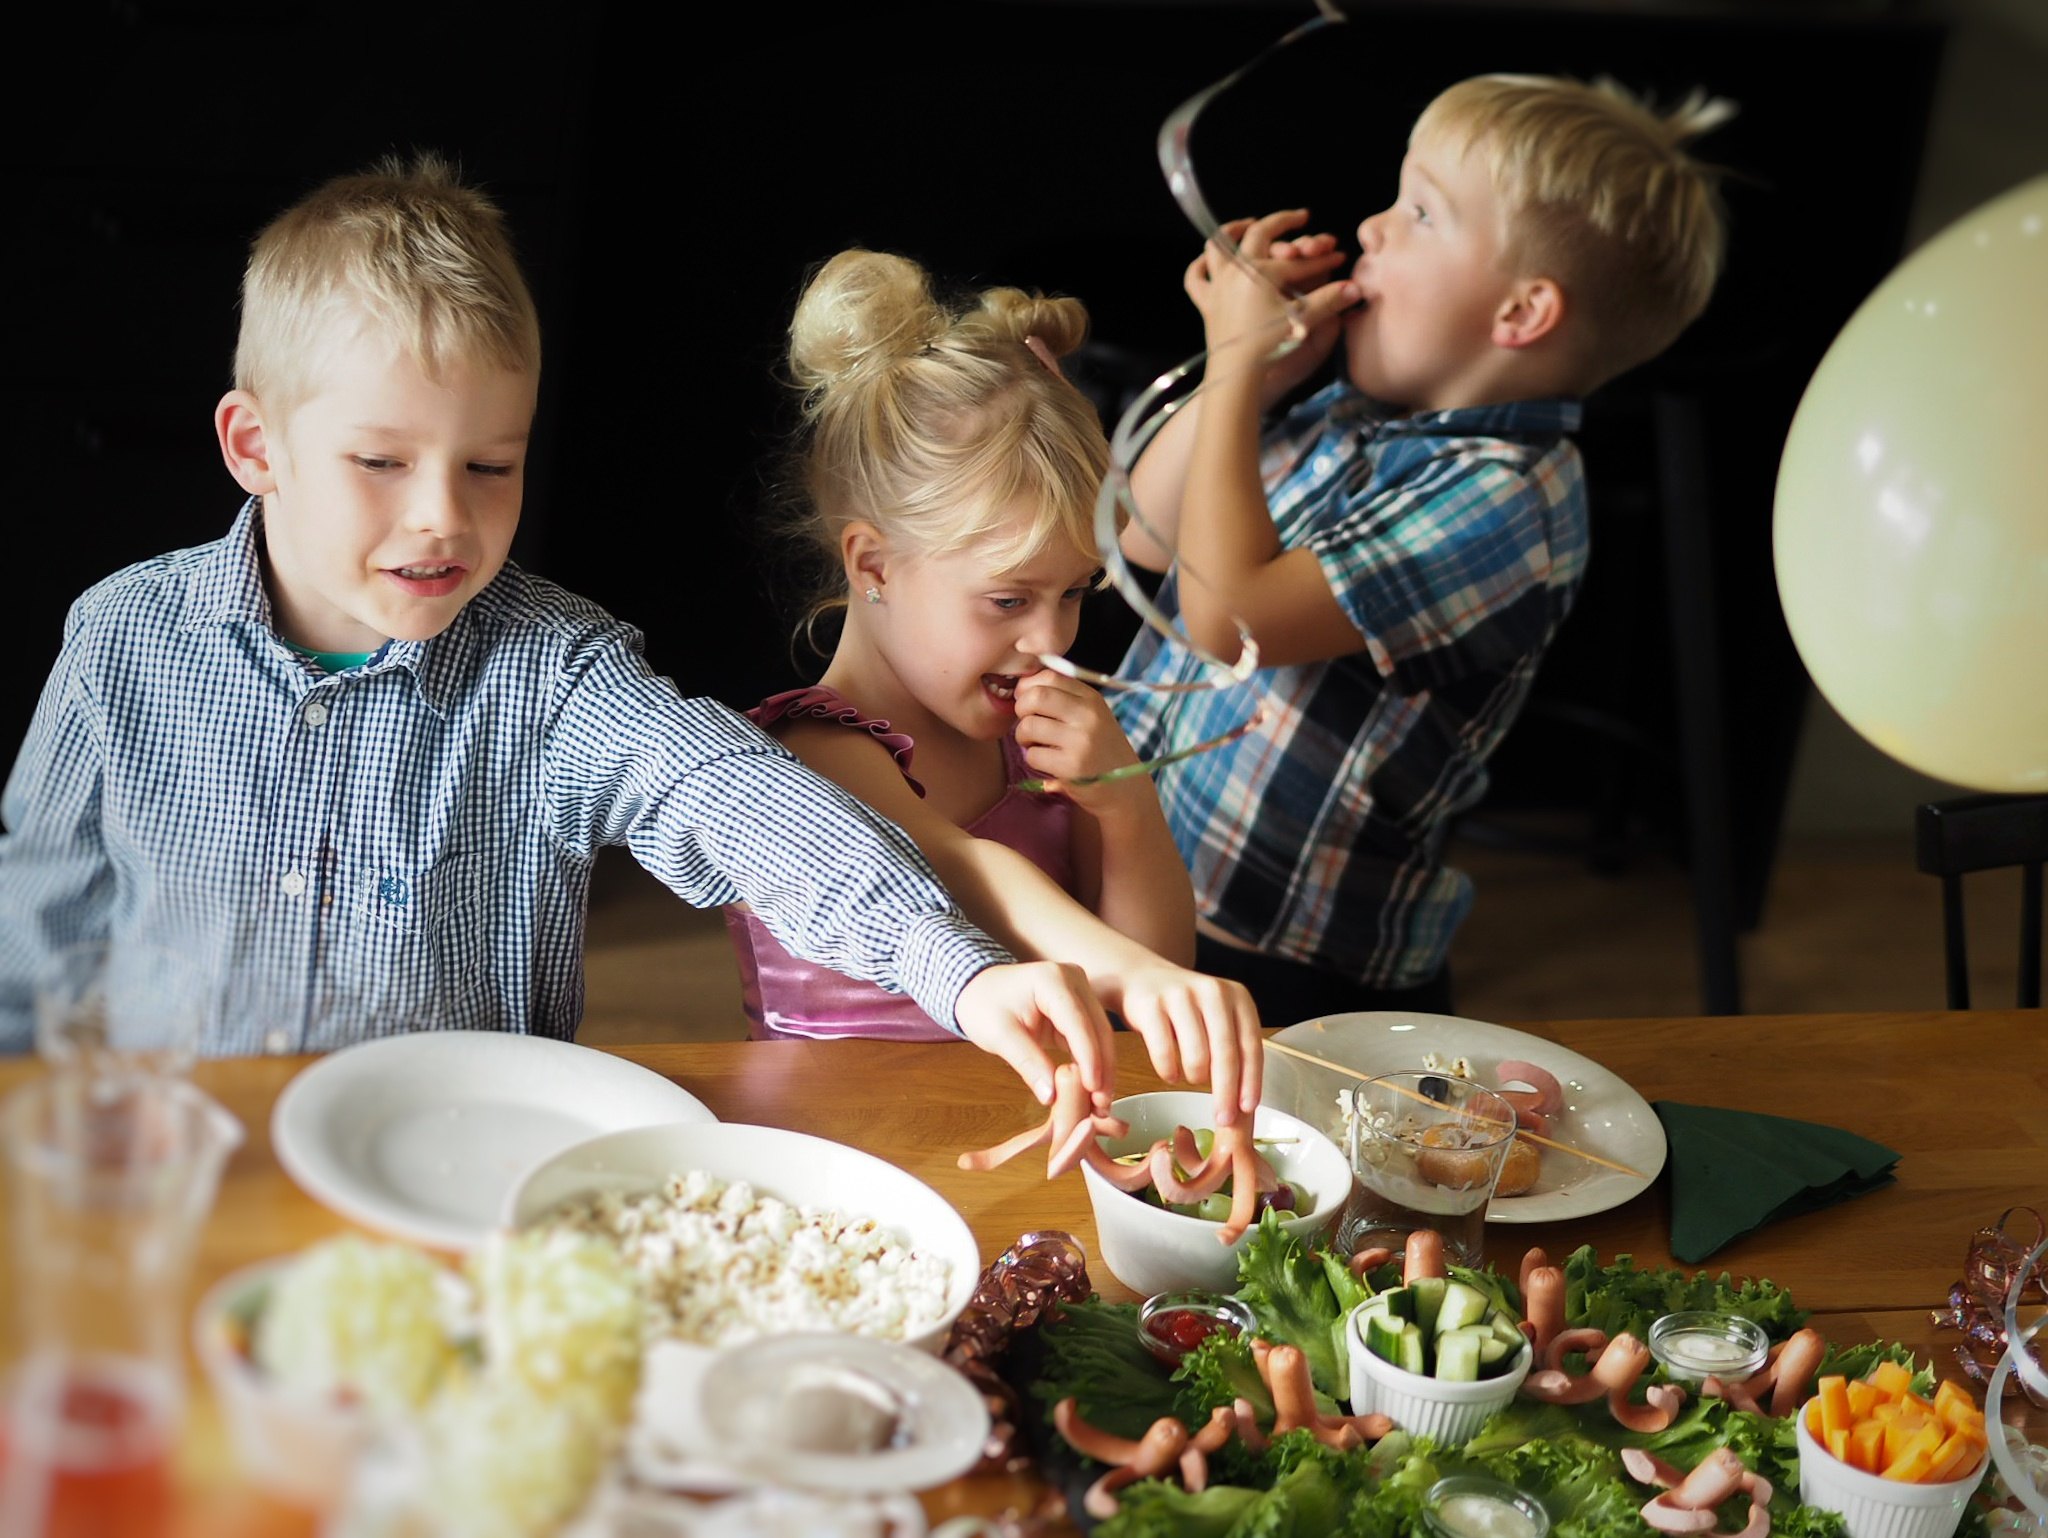 Ihanat ja ikimuistoiset synttärit kaikille – näin huomioit ruoka-allergiat lastenjuhlia järjestäessä